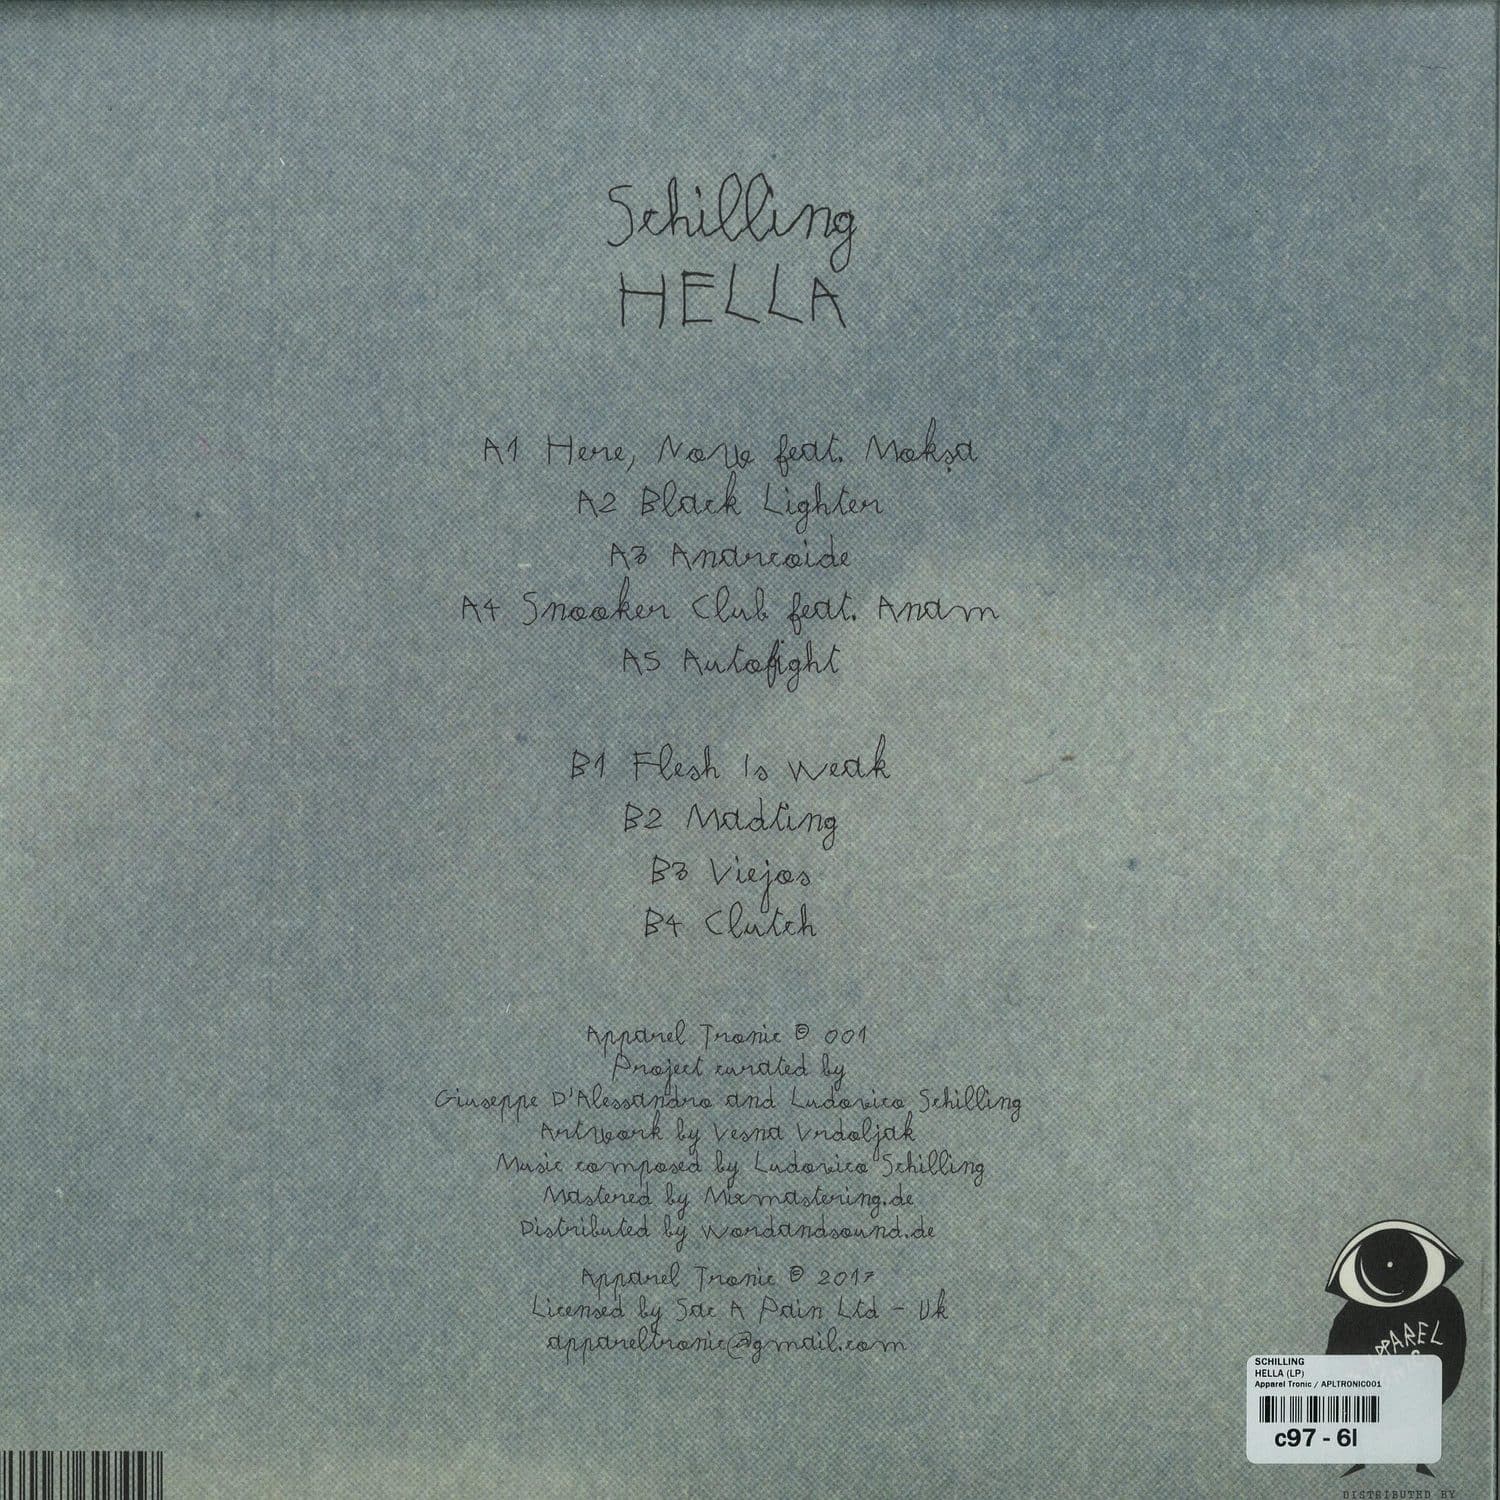 Hella by Schilling – SIDE B